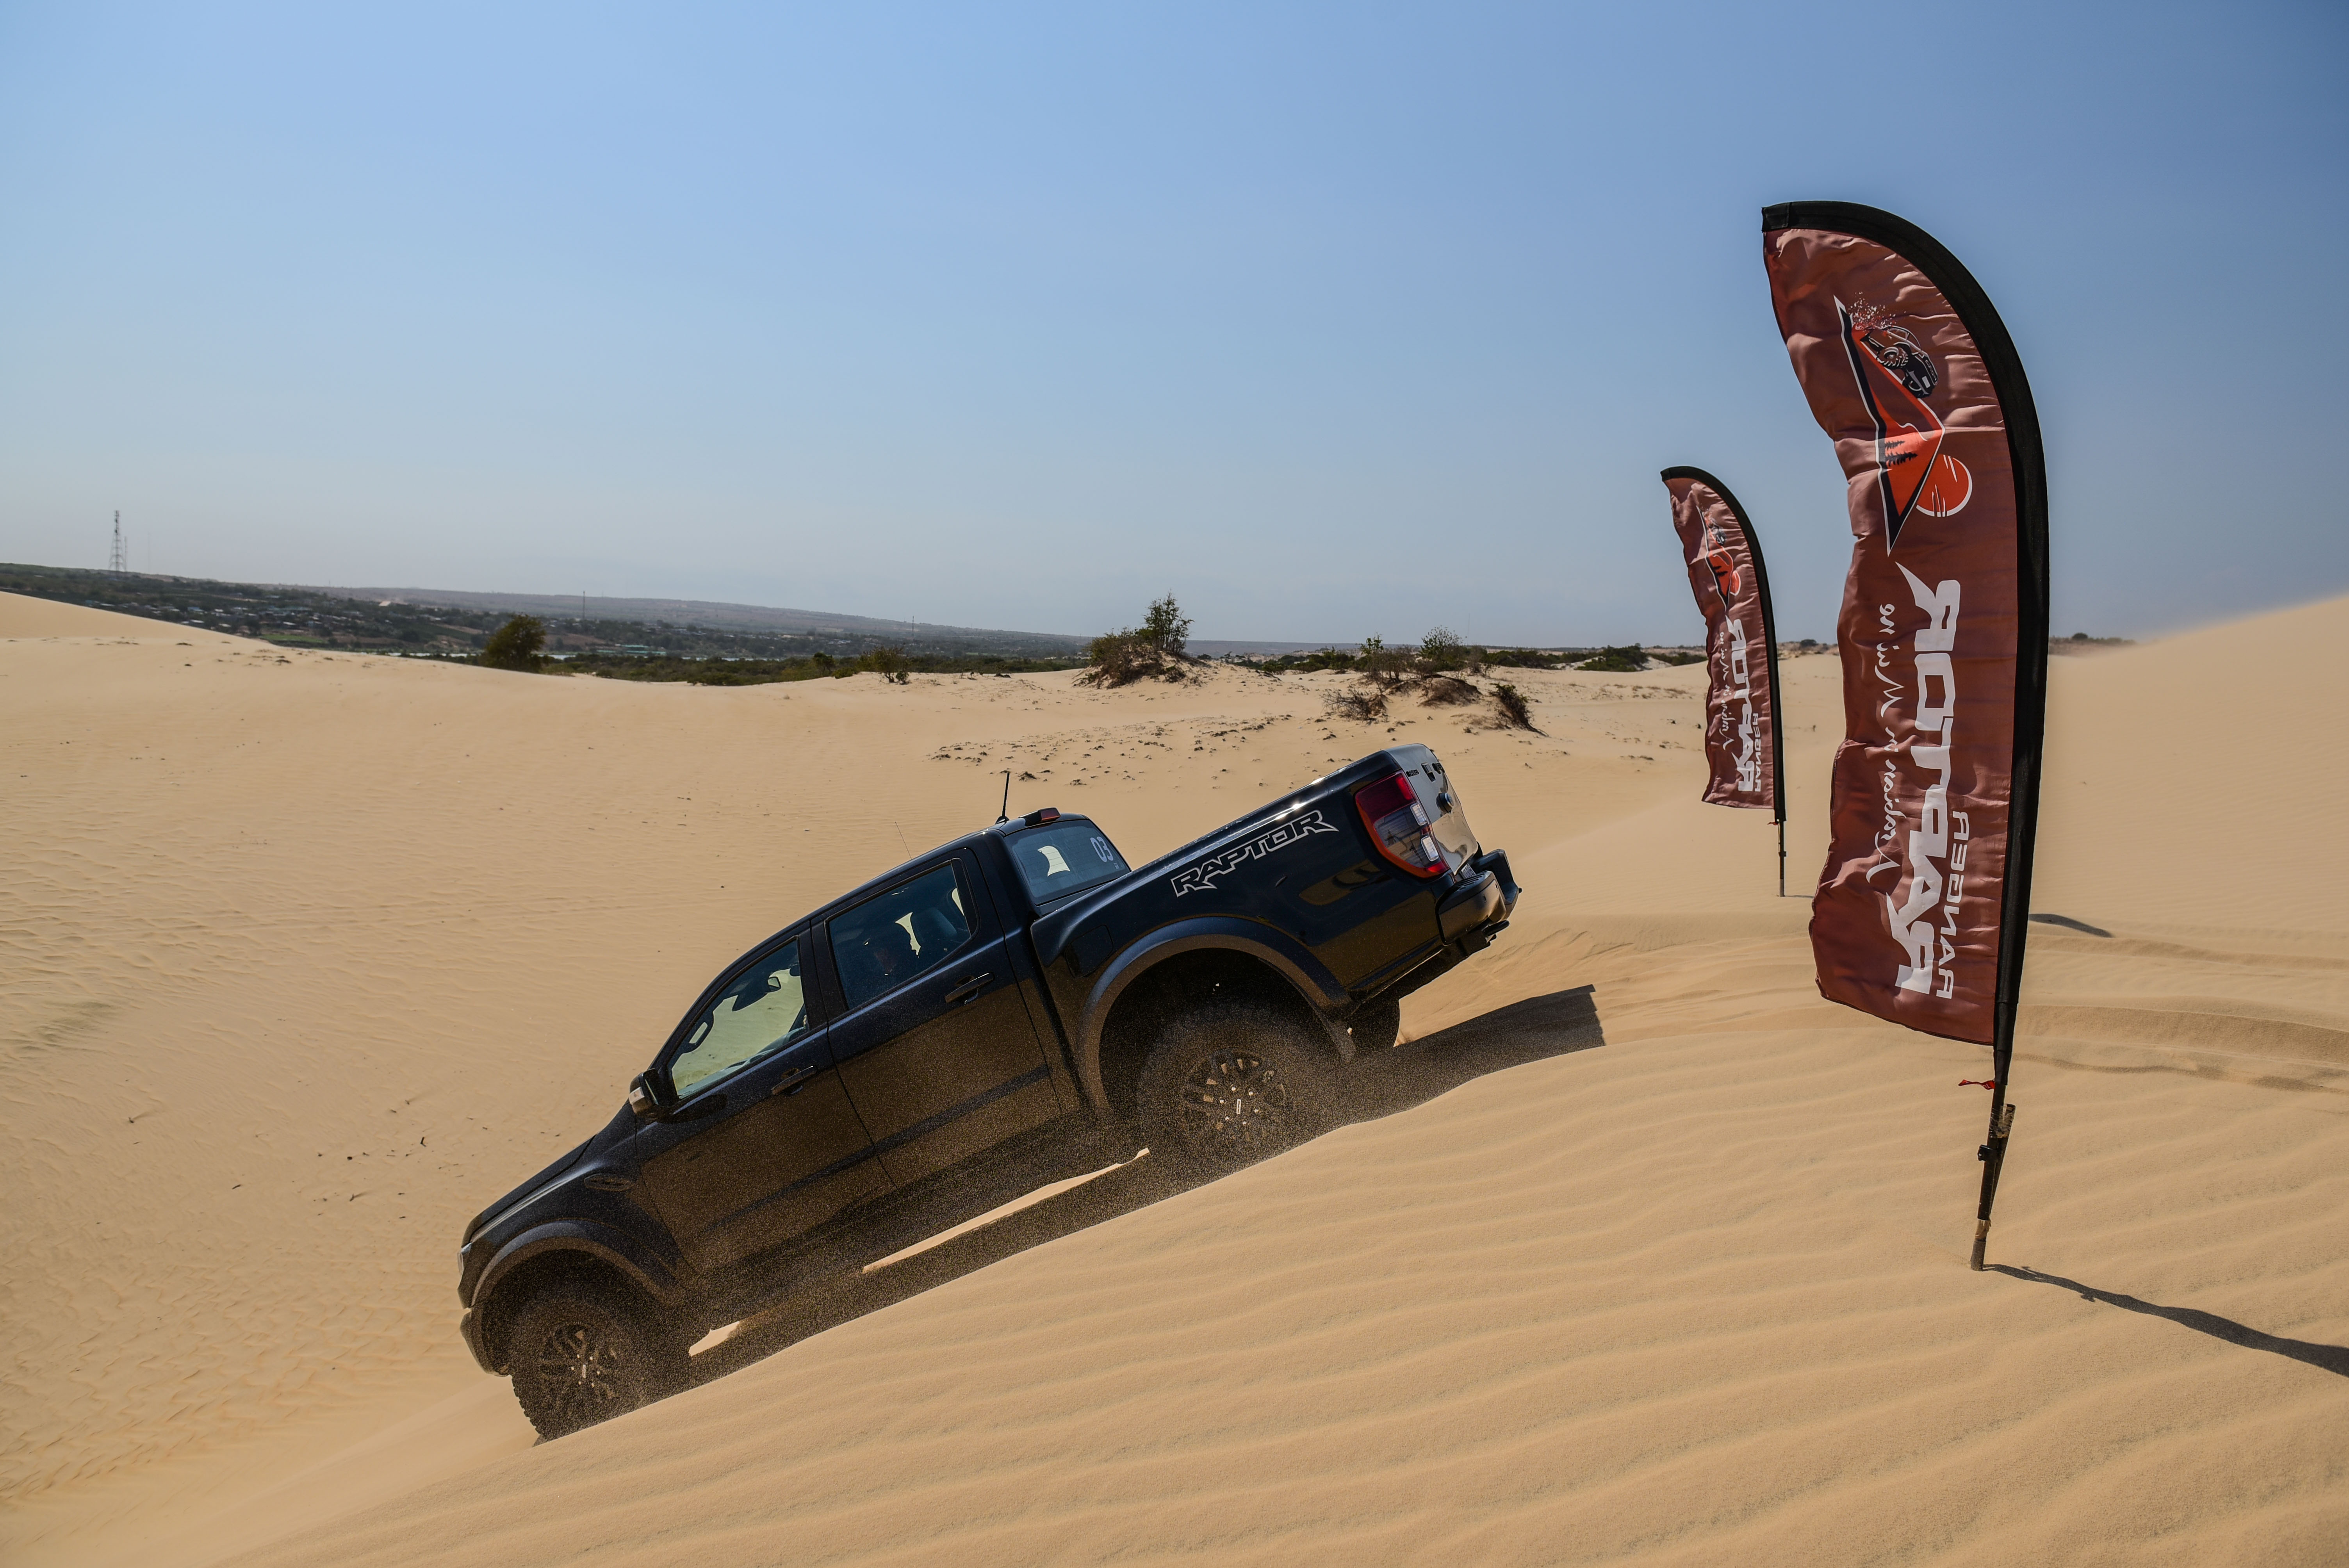 Chinh phục đồi cát Bàu Trắng cùng Ford Ranger Raptor ranger-raptor-drive-in-muine-4-3-2020-162.jpg